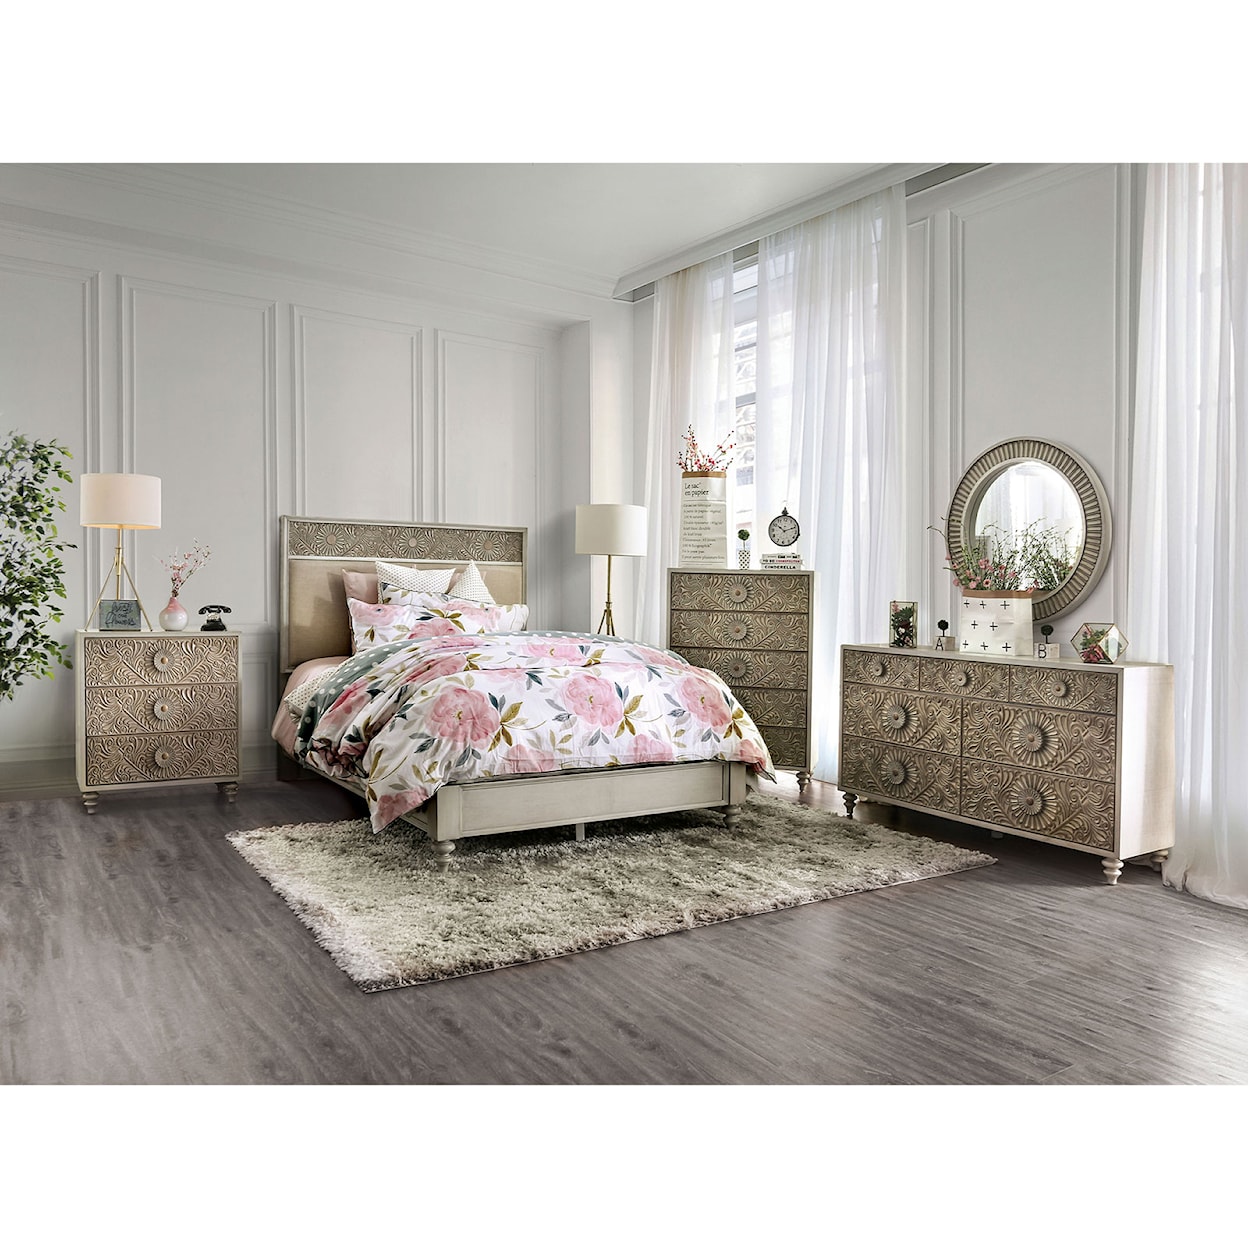 Furniture of America Jakarta 4-Piece Queen Bedroom Set 